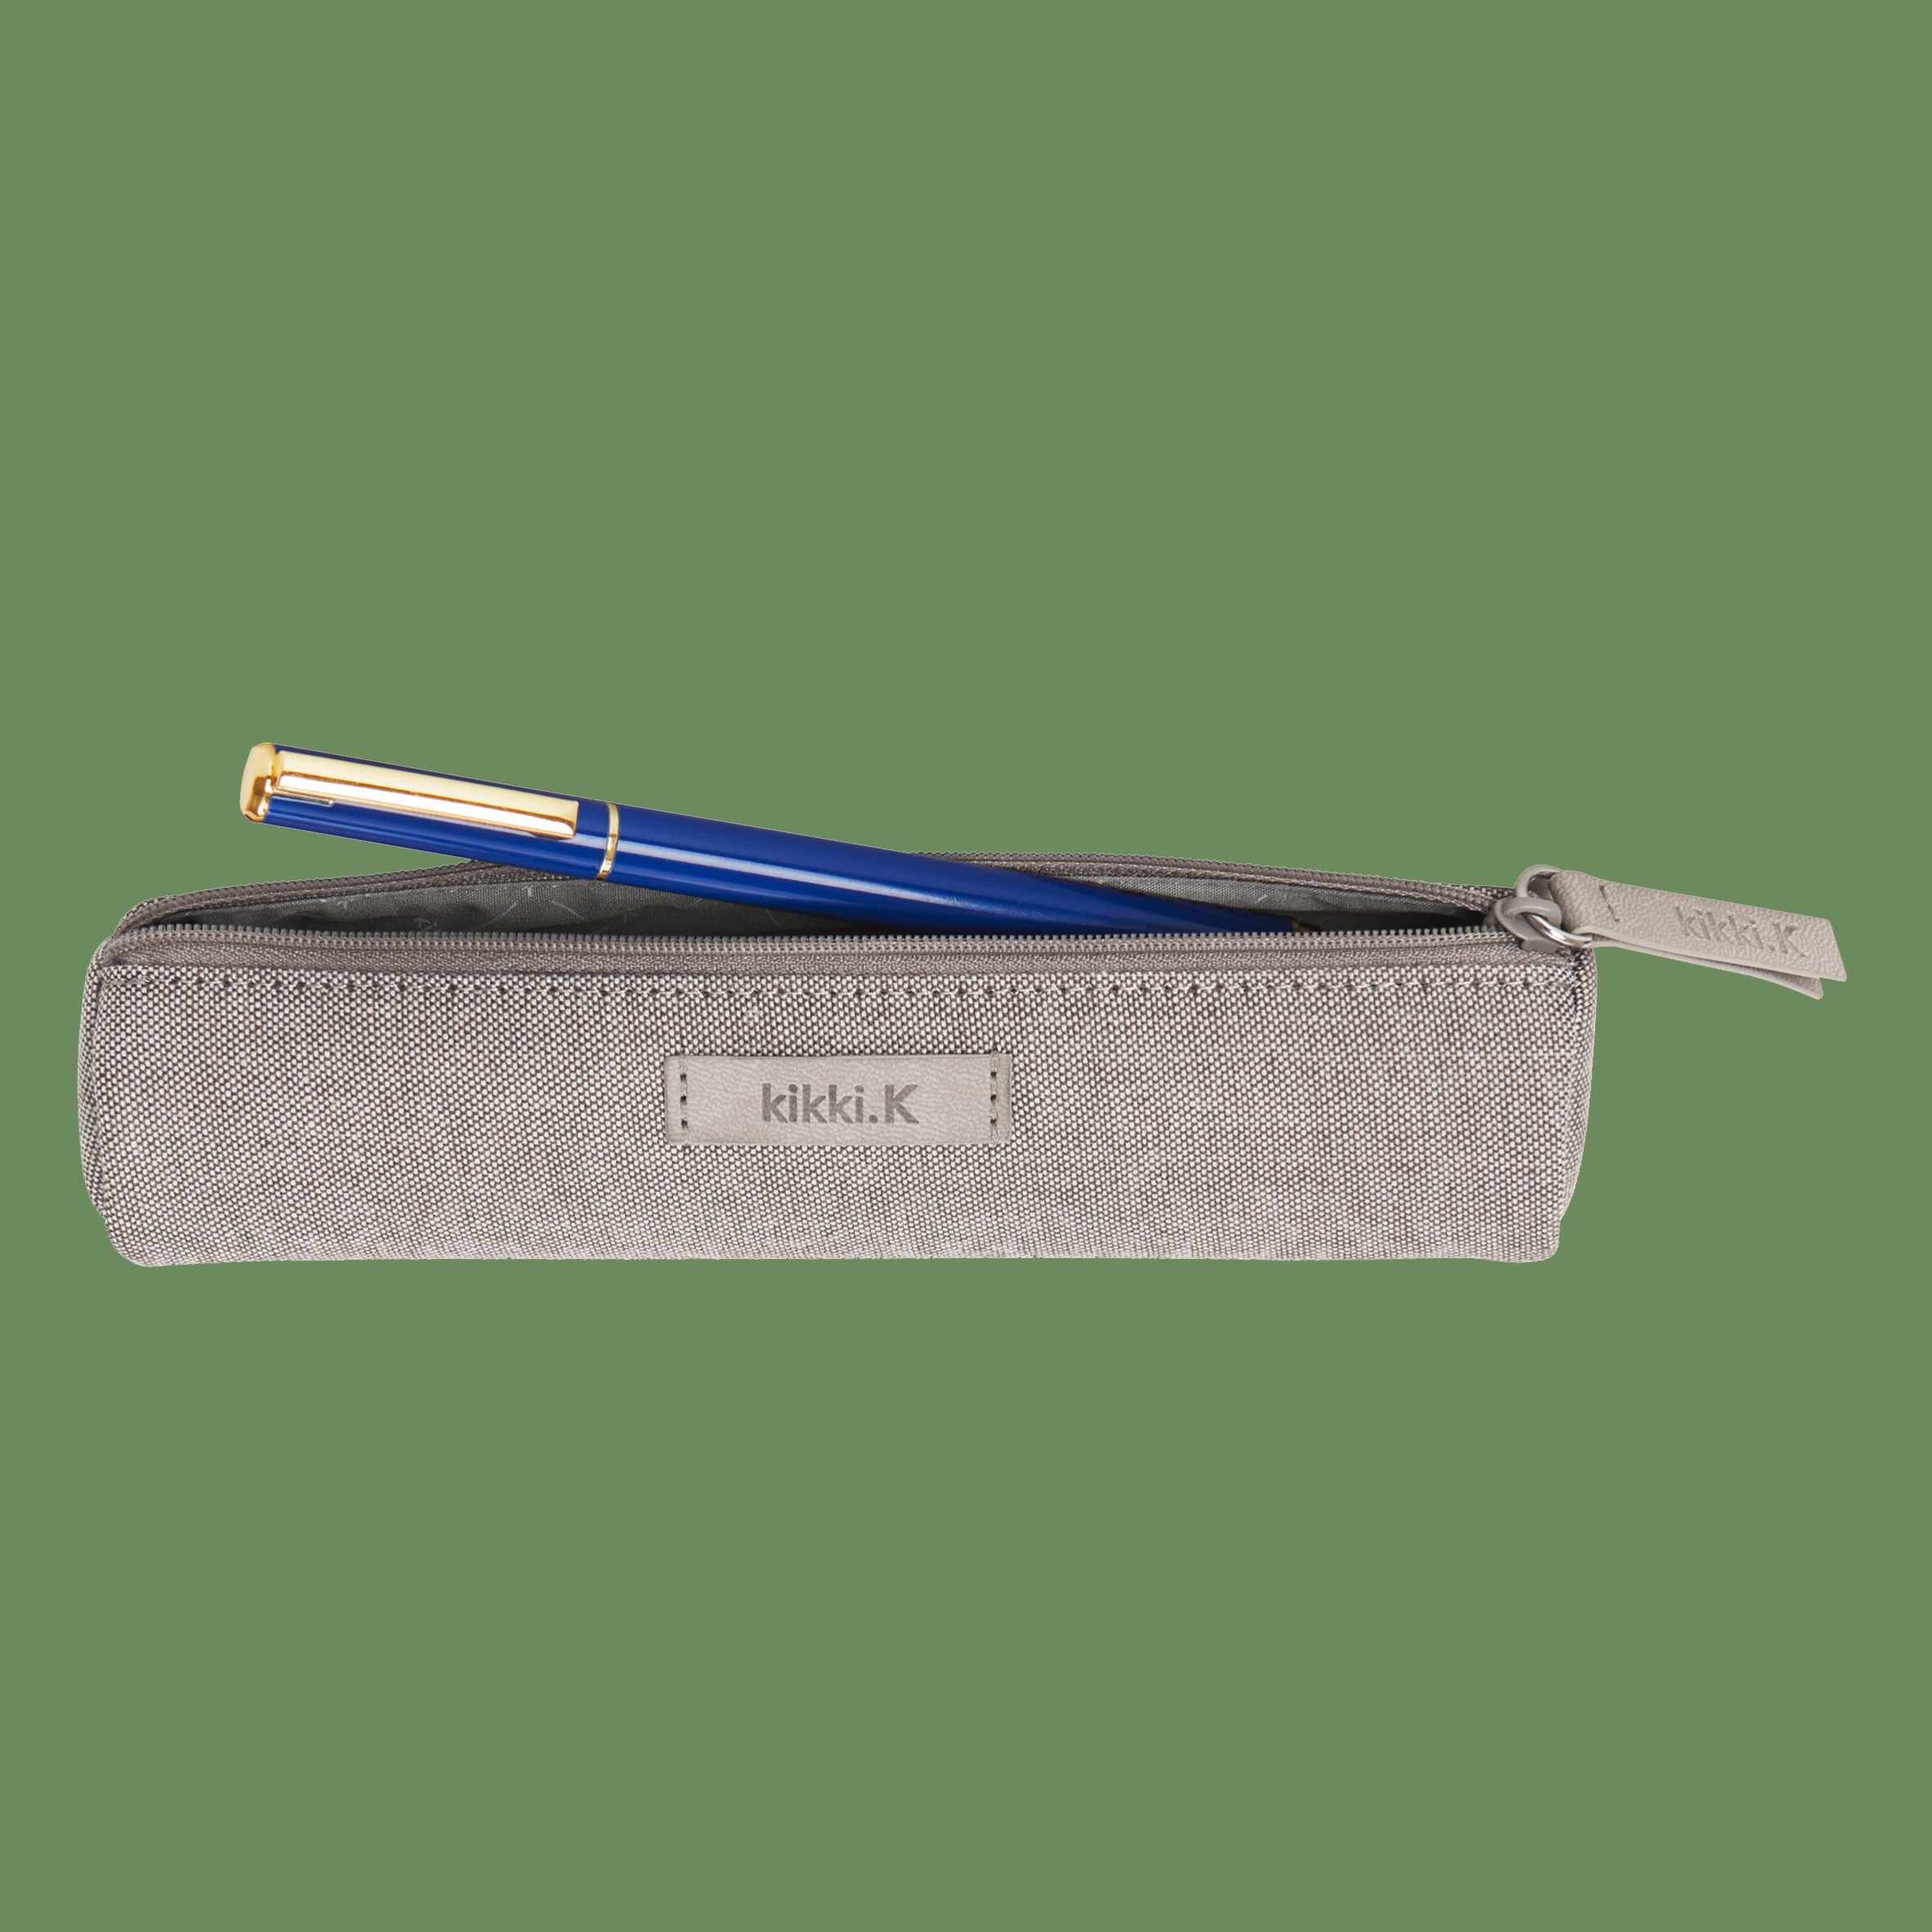 Linen-Look Pencil Case